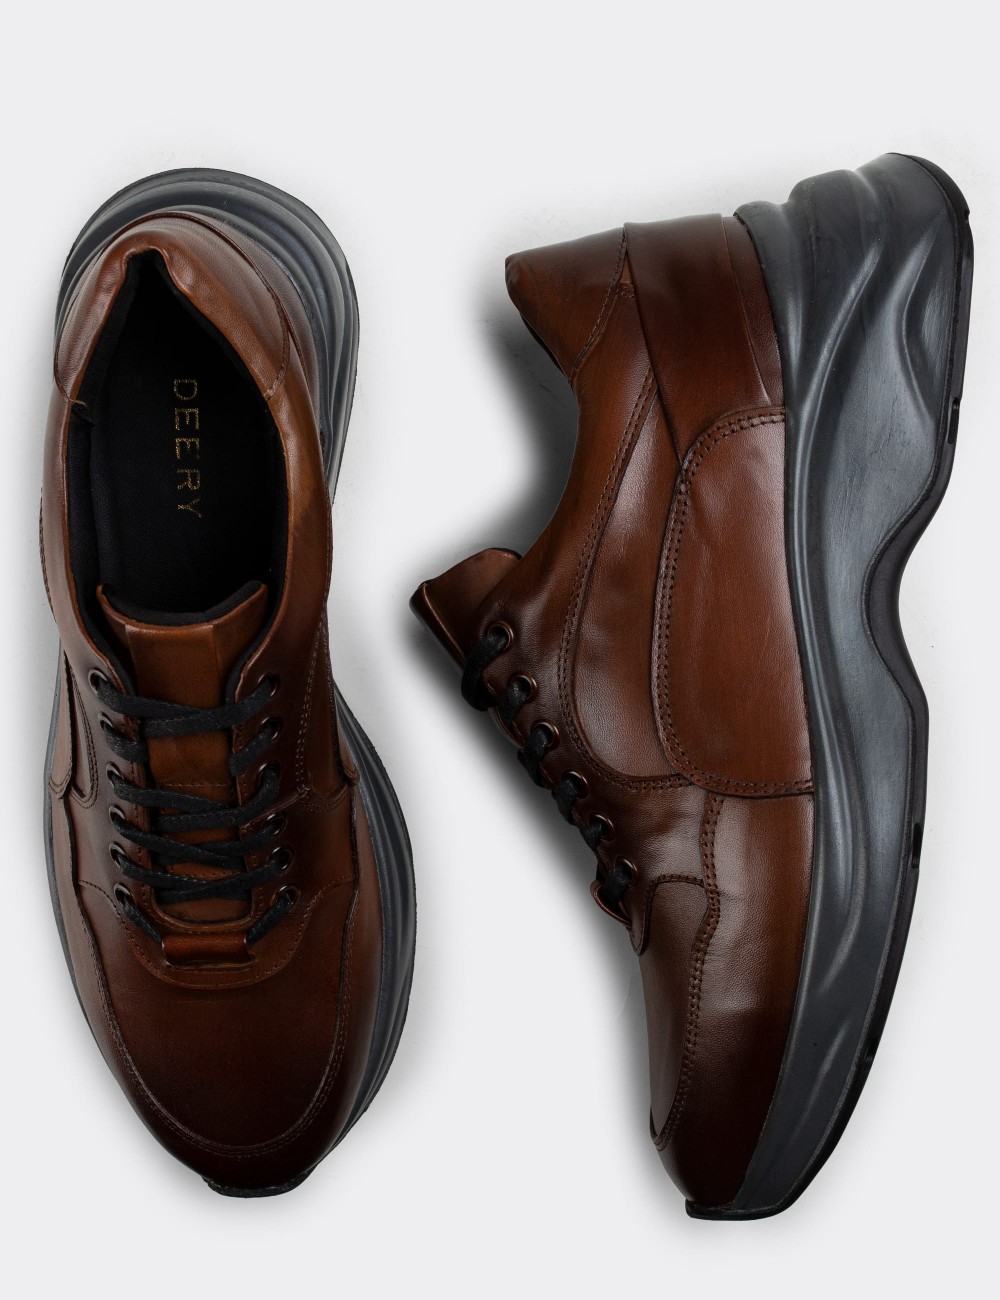 Tan  Leather Sneakers - 01817MTBAT01